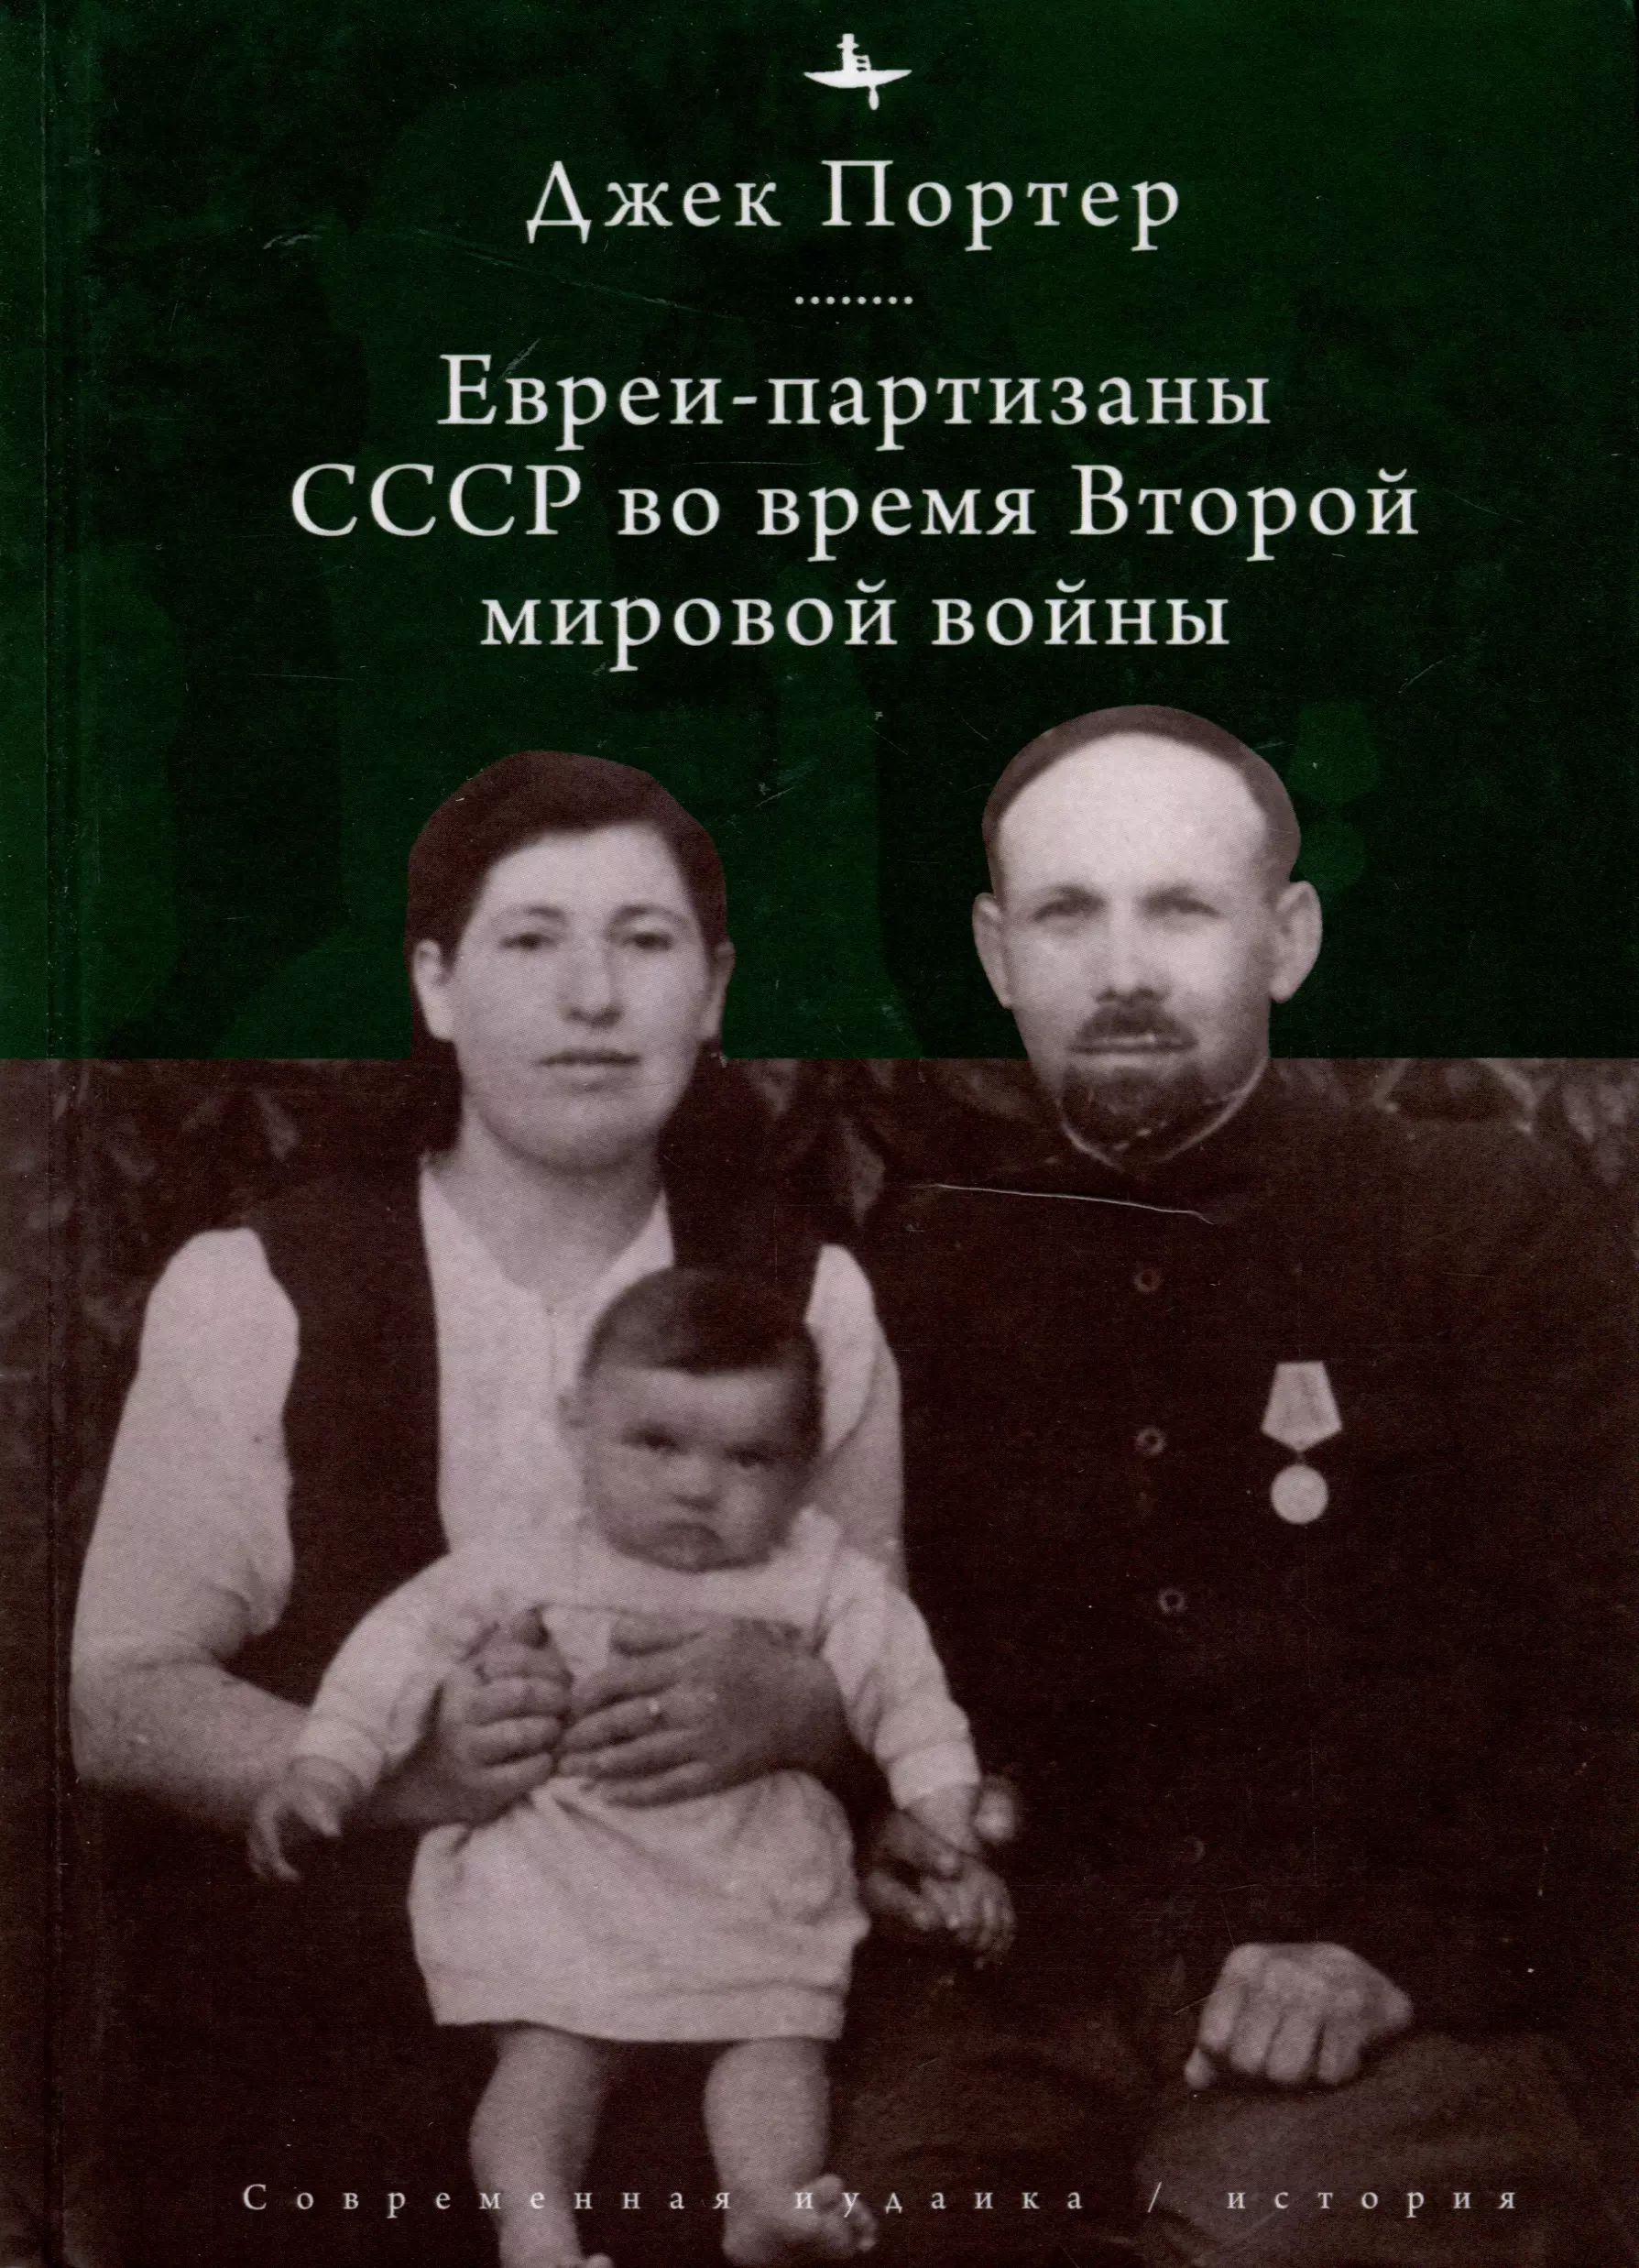 Портер Джек - Евреи-партизаны СССР во время Второй мировой войны